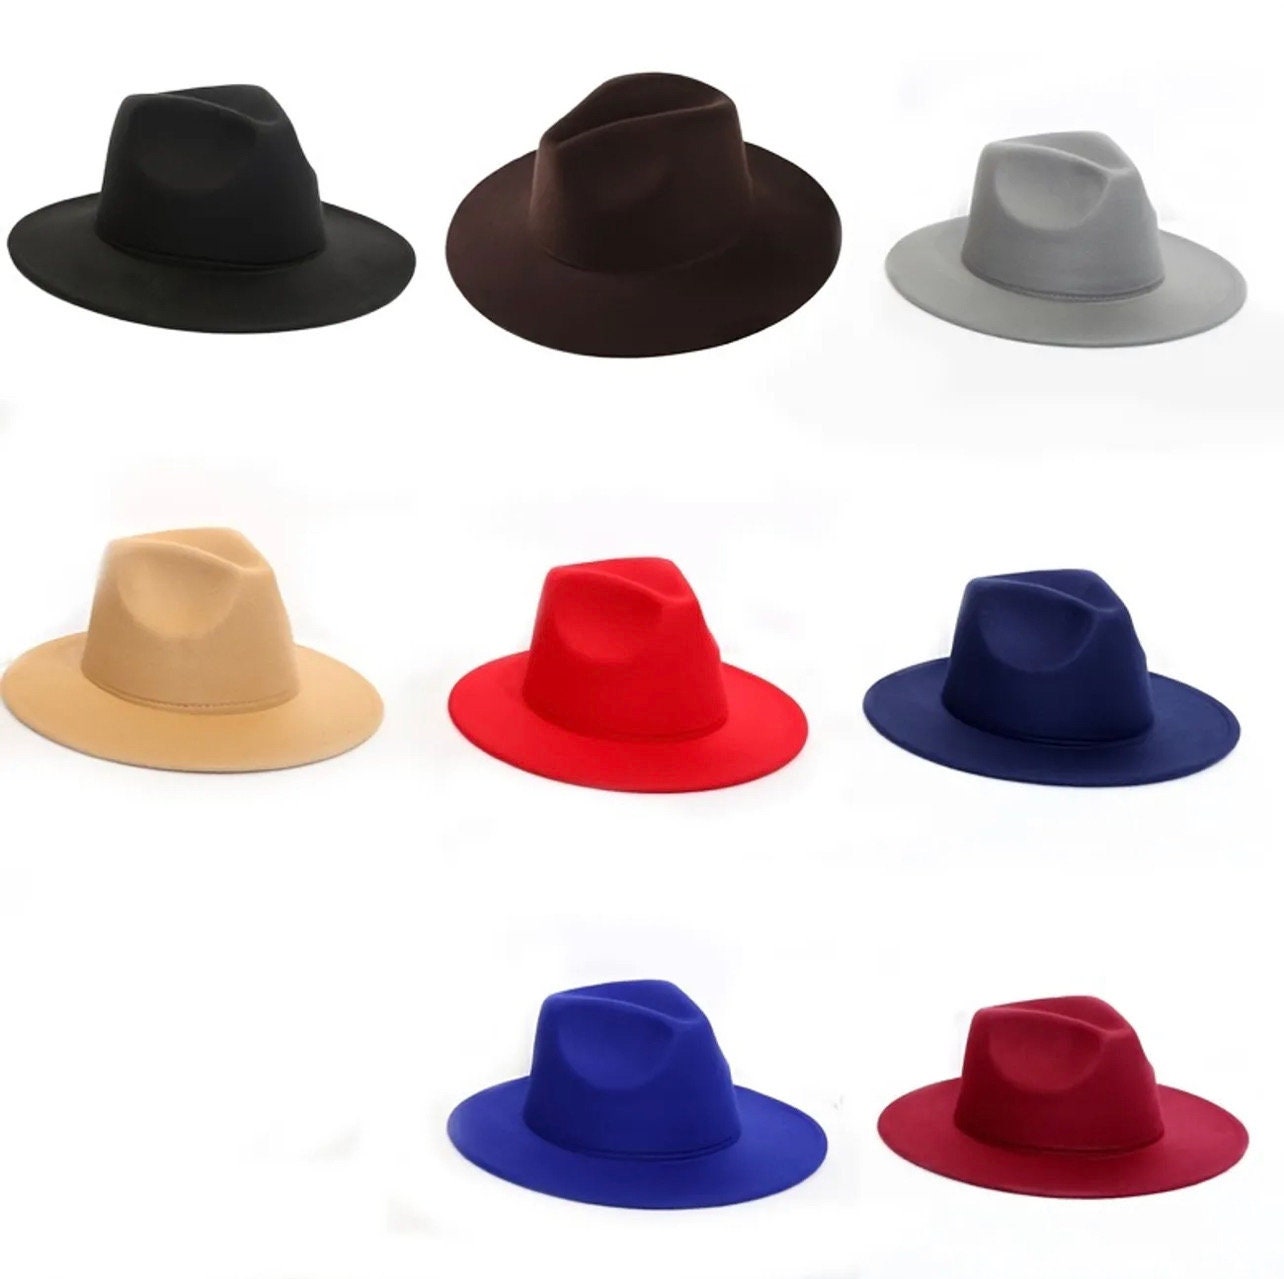 Elegant Felt Fedora, Fedora Pillbox, Brown Felt Fedora, Hat With Feathers,  Edwardian Riding Hat, Rnb Feathers Fedora, Fedora Pillbox Hat 